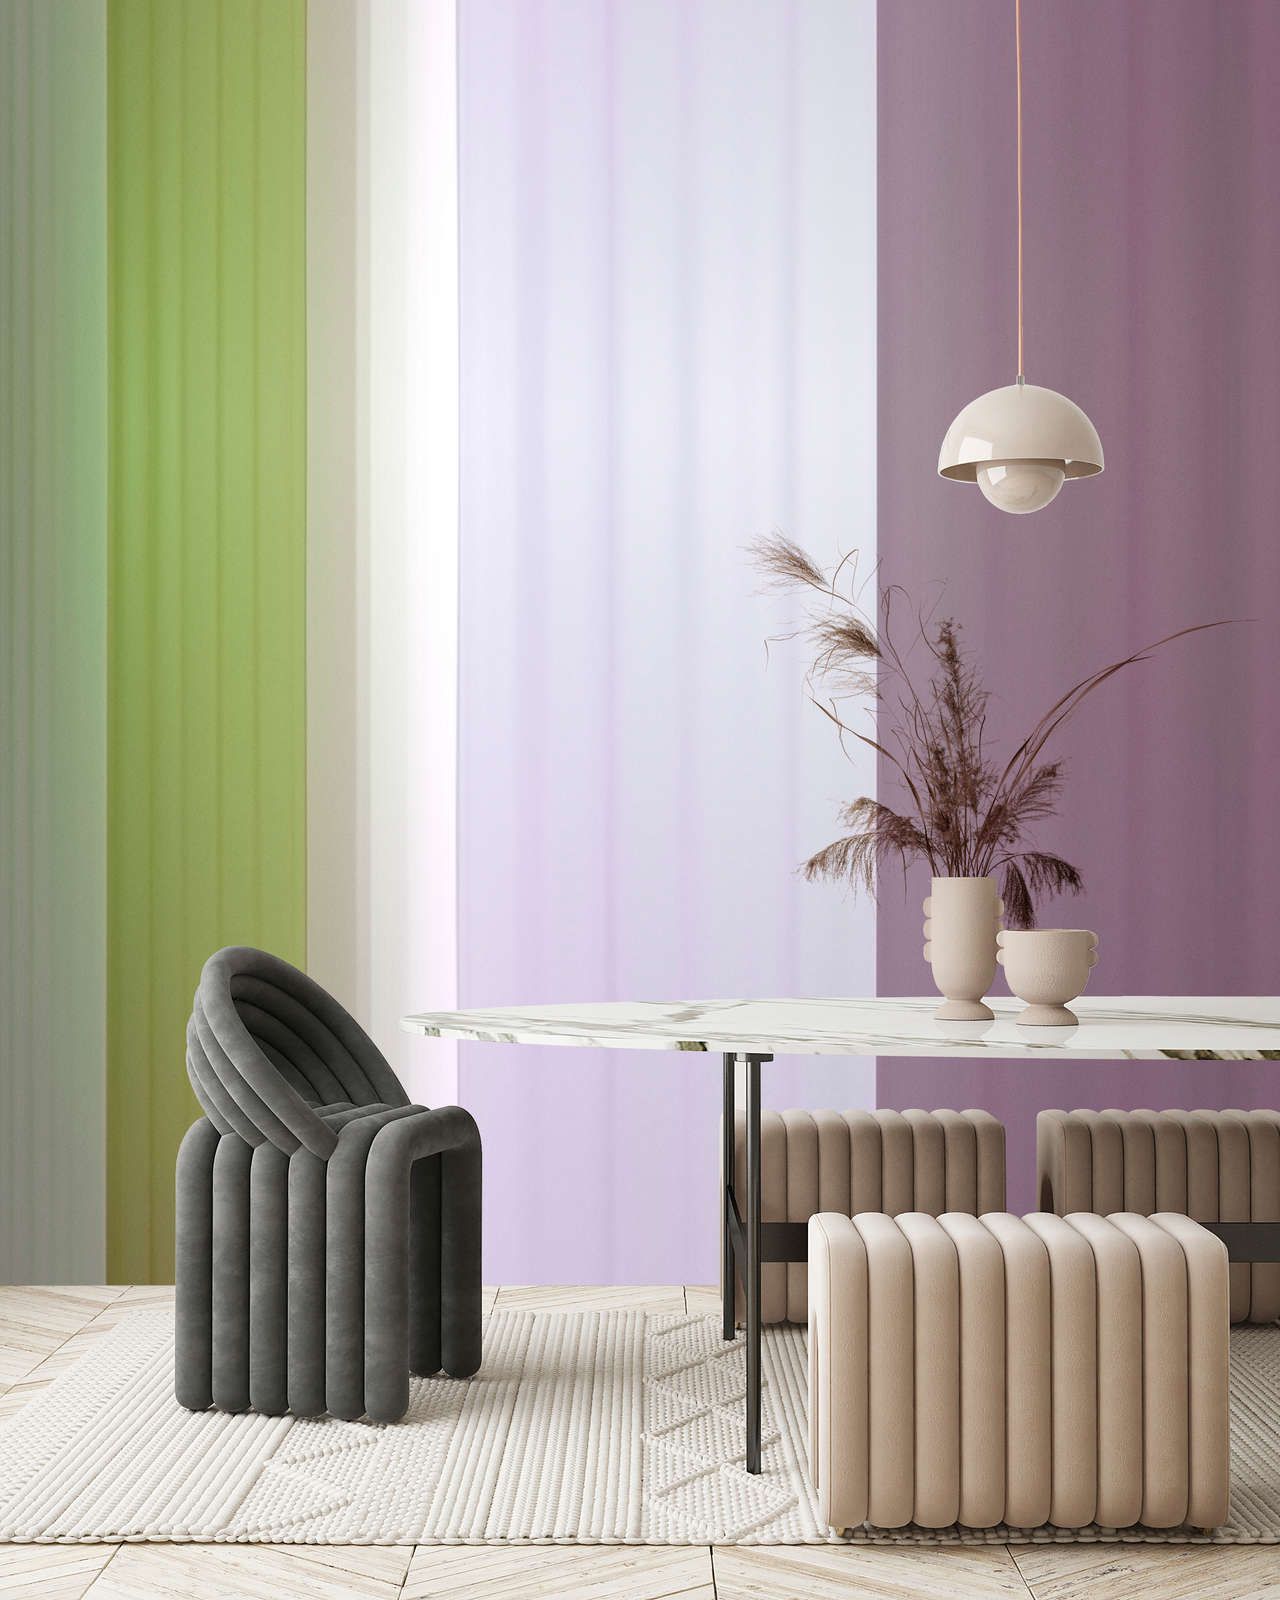             Fotomural »co-colores 3« - Degradado de colores con rayas - verde, lila, morado | Material sin tejer liso, ligeramente nacarado
        